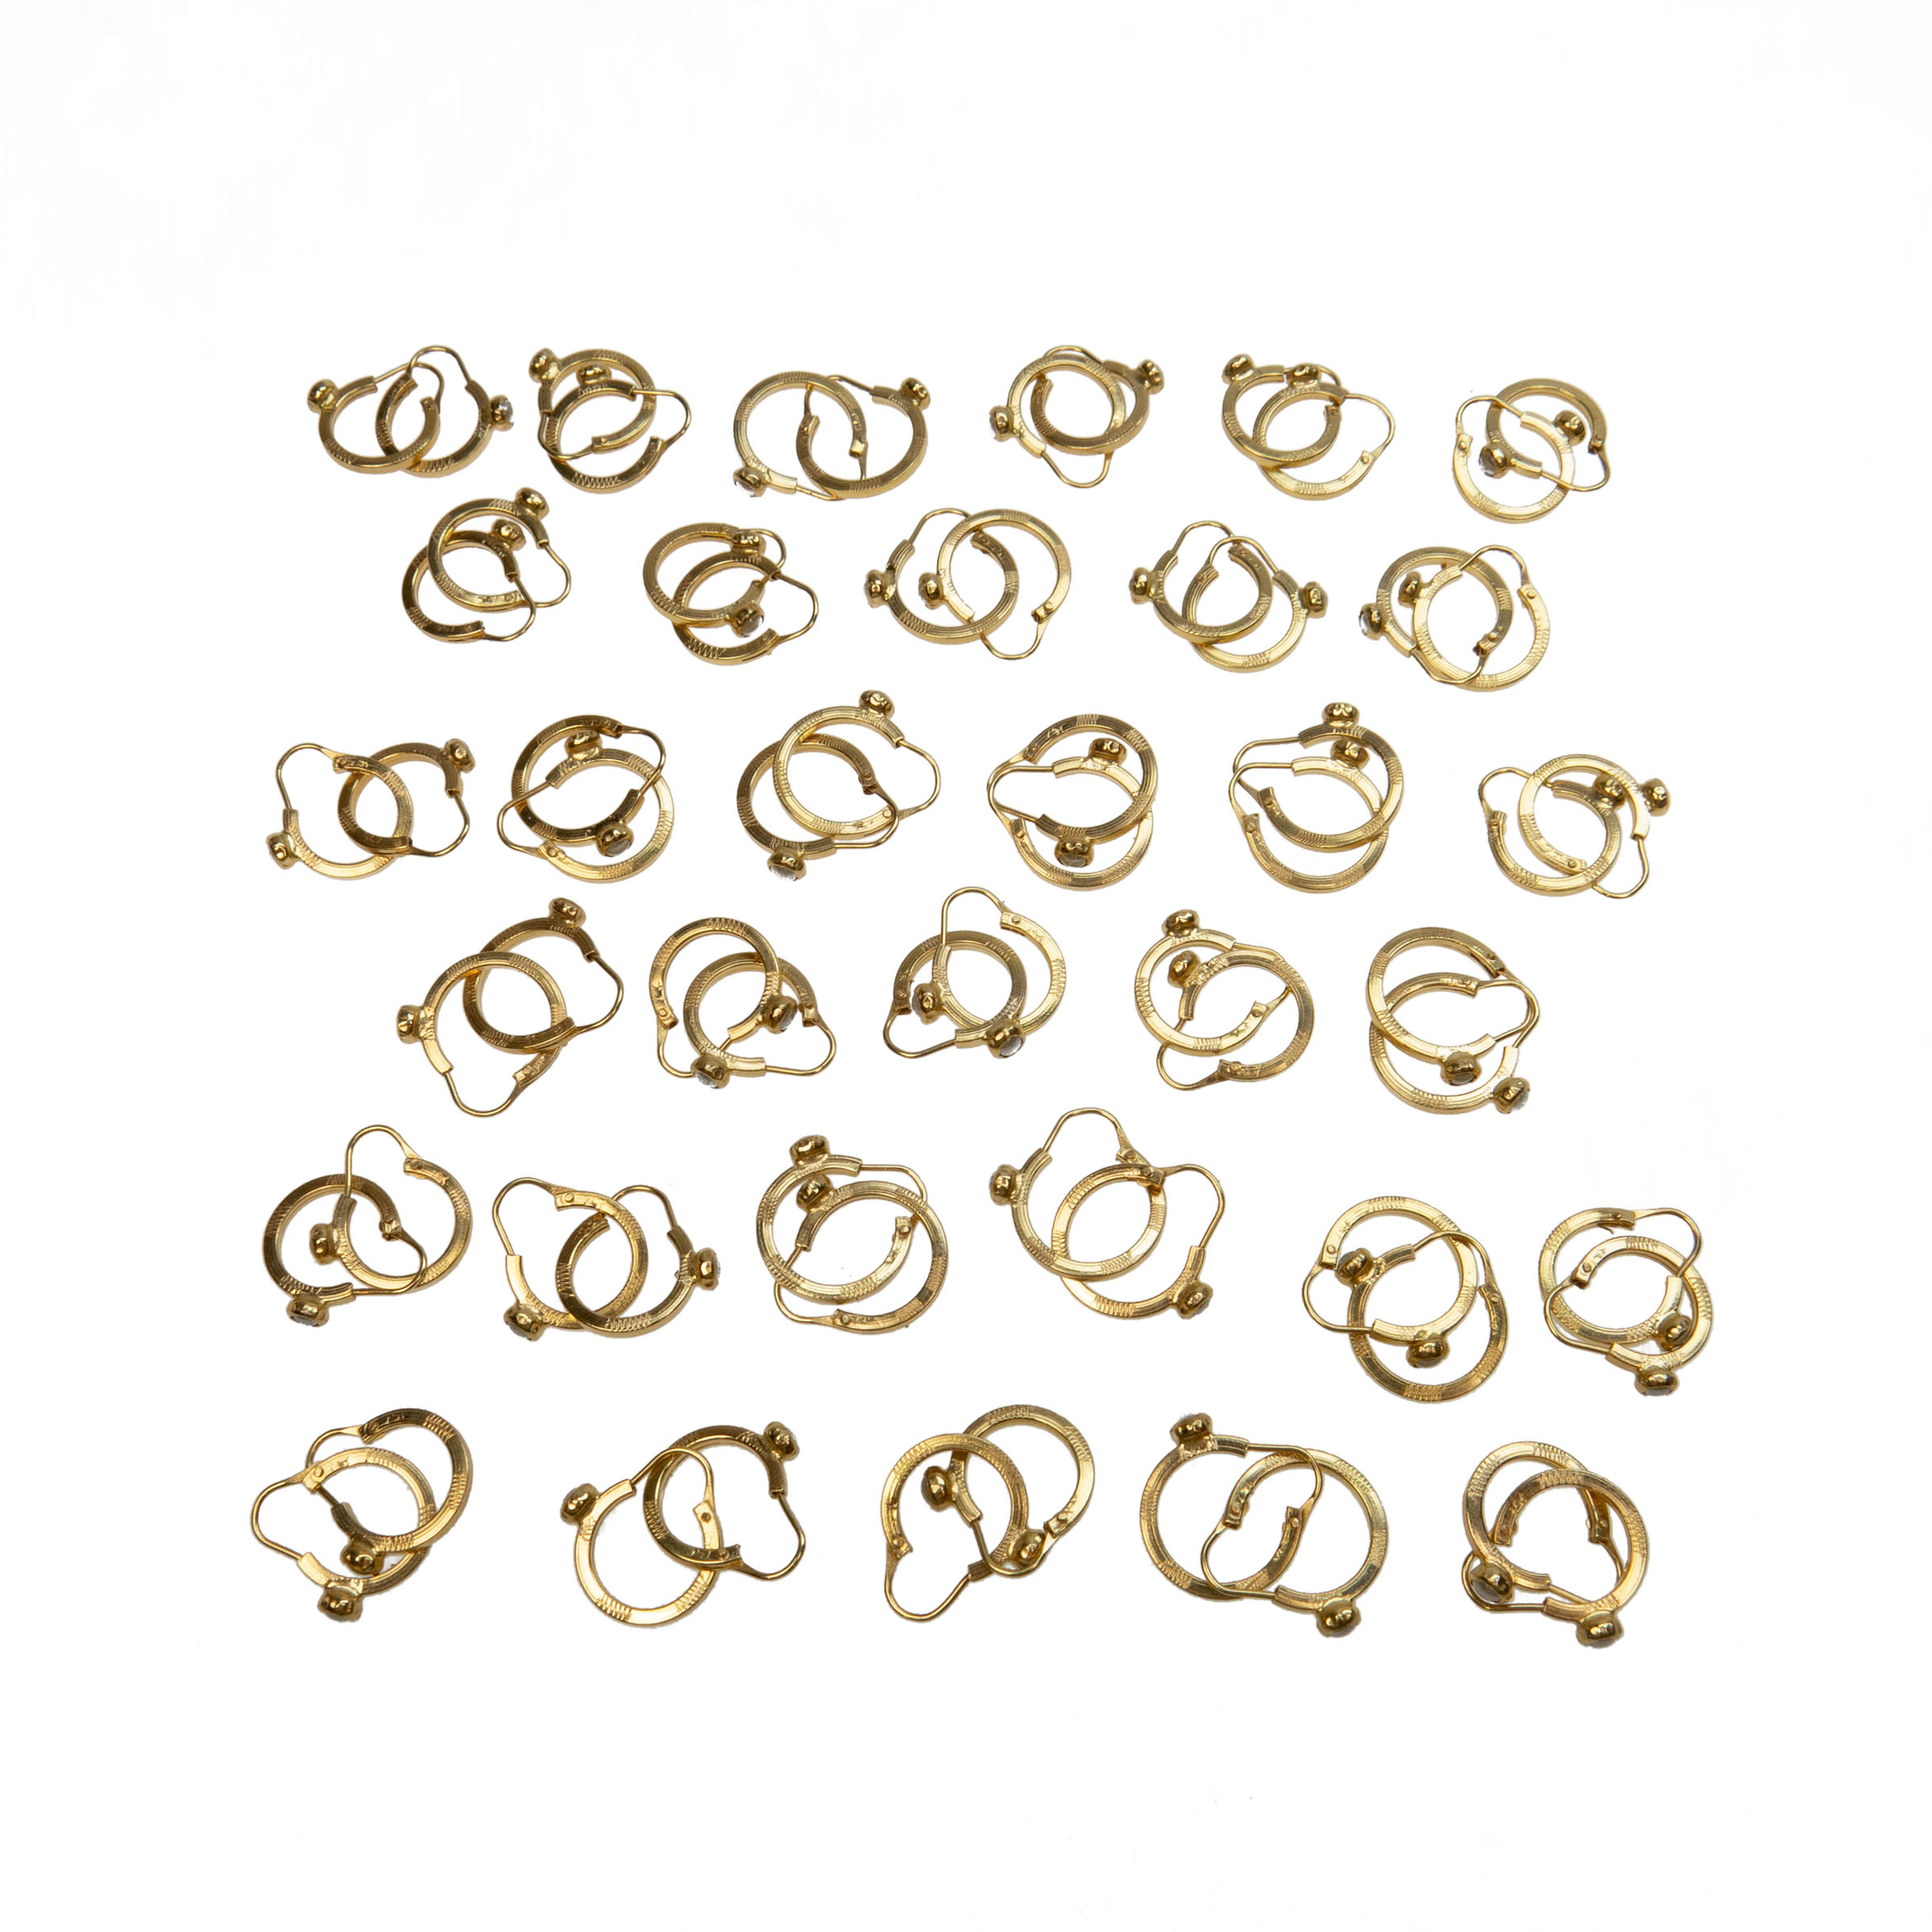 33 x Pairs Of 18K Yellow Gold Hoop Earrings